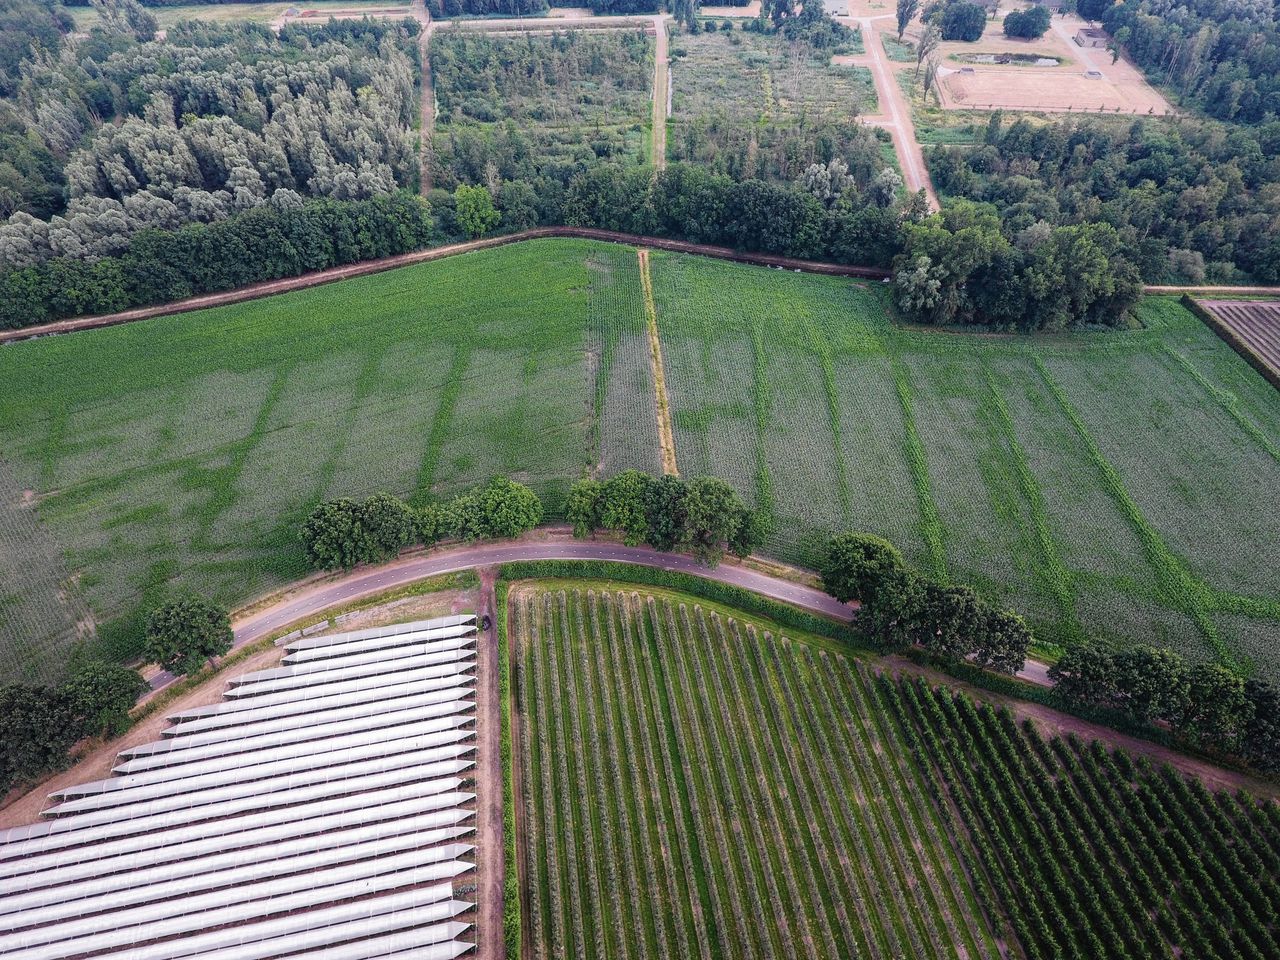 Landerijen in Soerendonk. De groene lijnen markeren sloten die ruim veertig jaar geleden werden gedempt. Daar kan de aangeplante maïs nog water vinden, waar hij op andere plekken verdort.